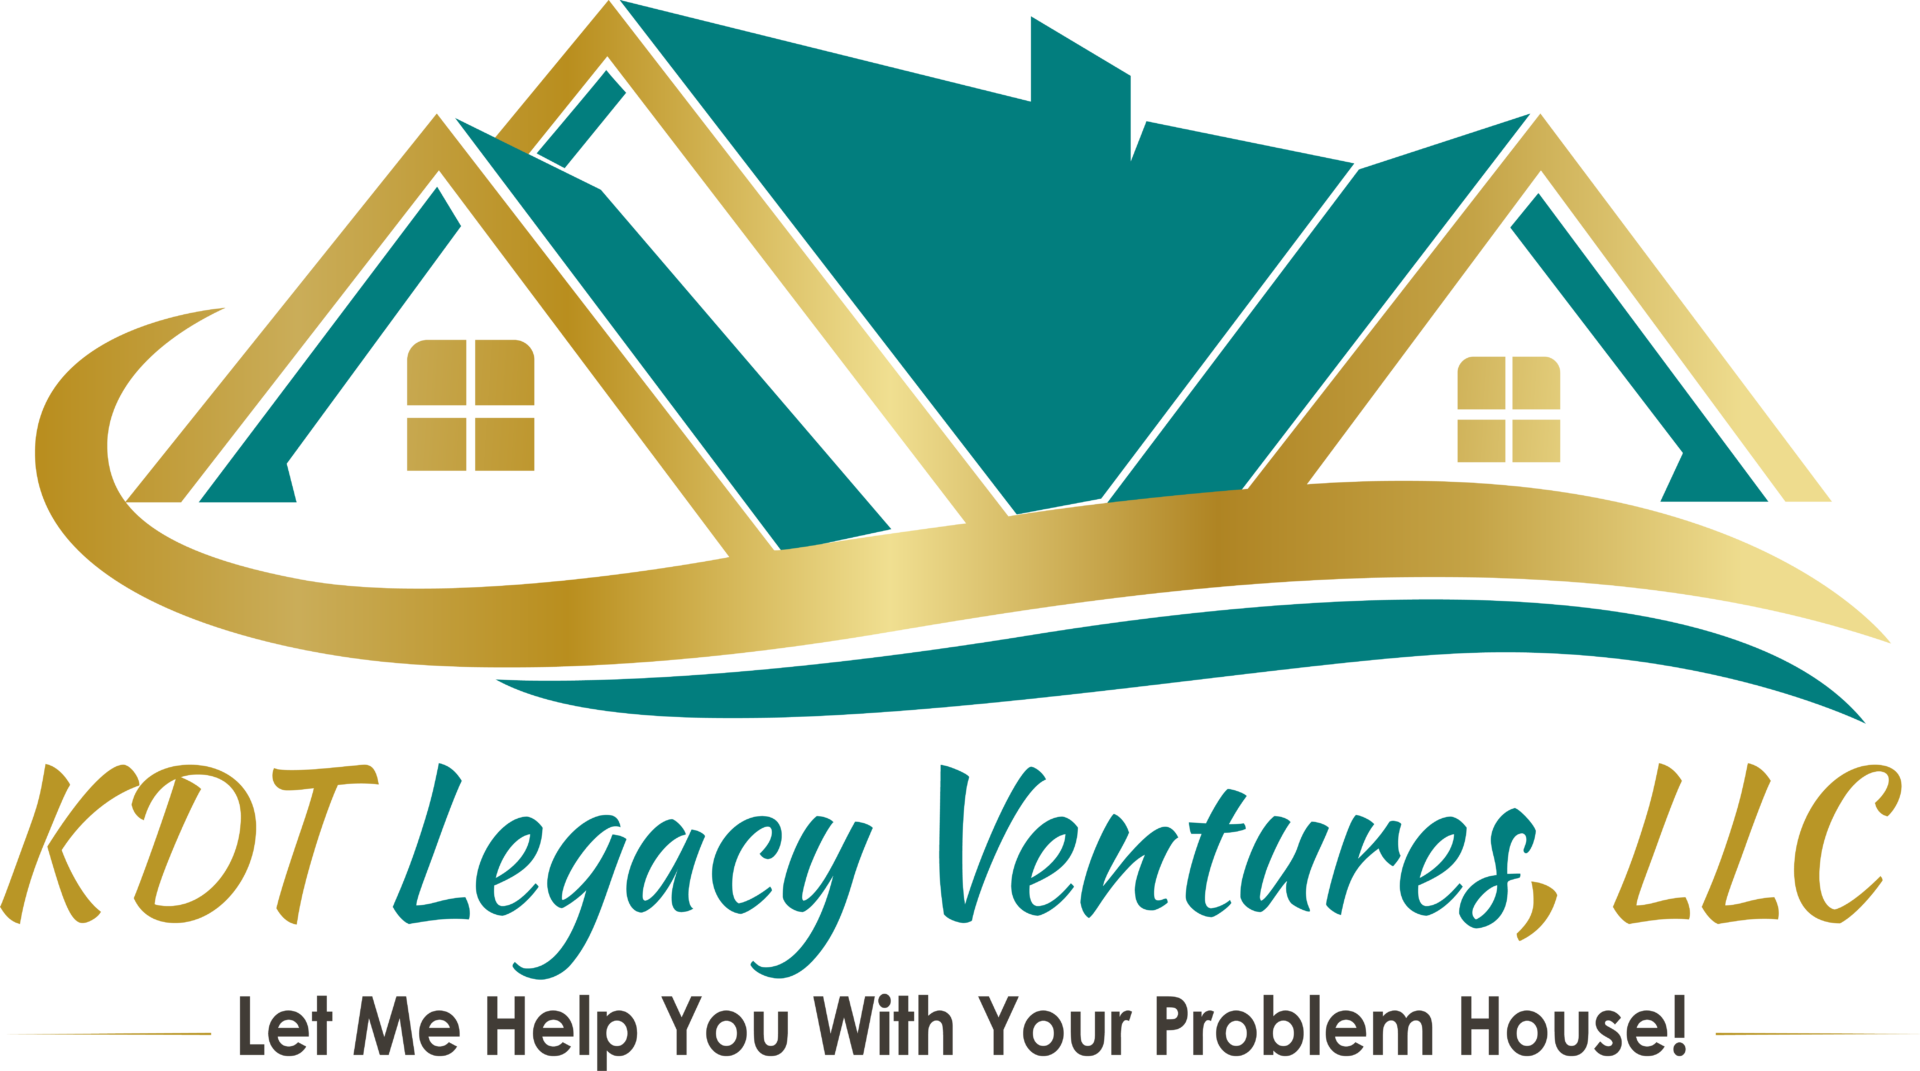 KDT Legacy Ventures logo